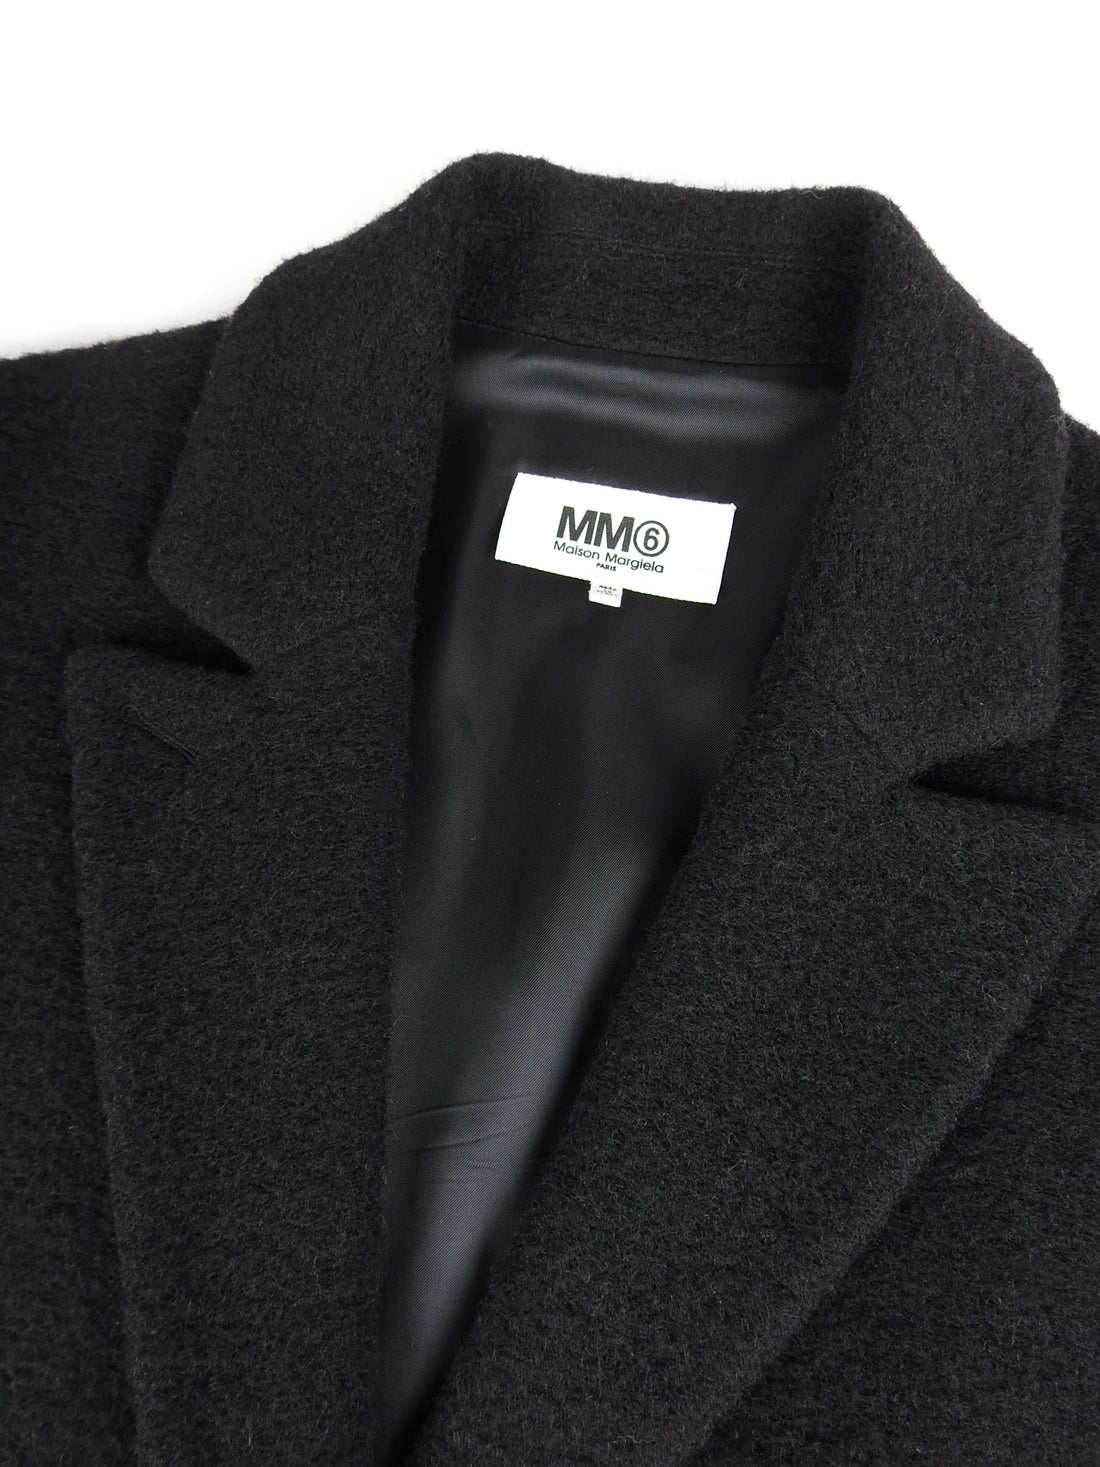 MM6 Black Oversized Short Coat - 36 / 4 / S